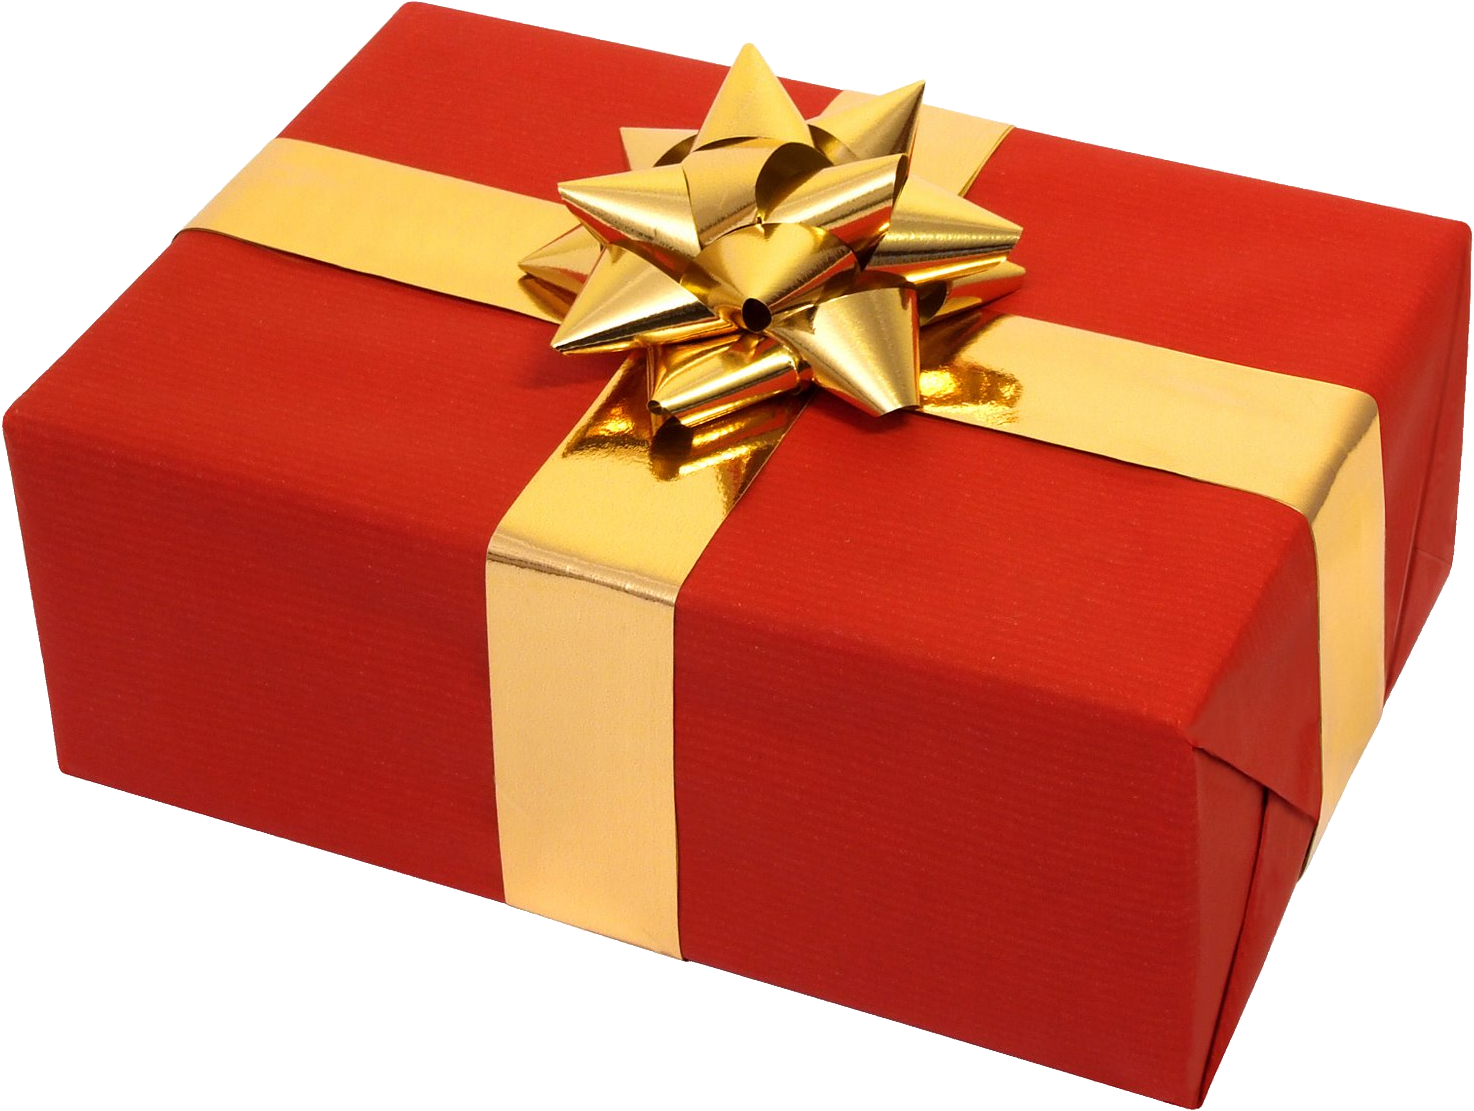 PNG File Name: Christmas Gift